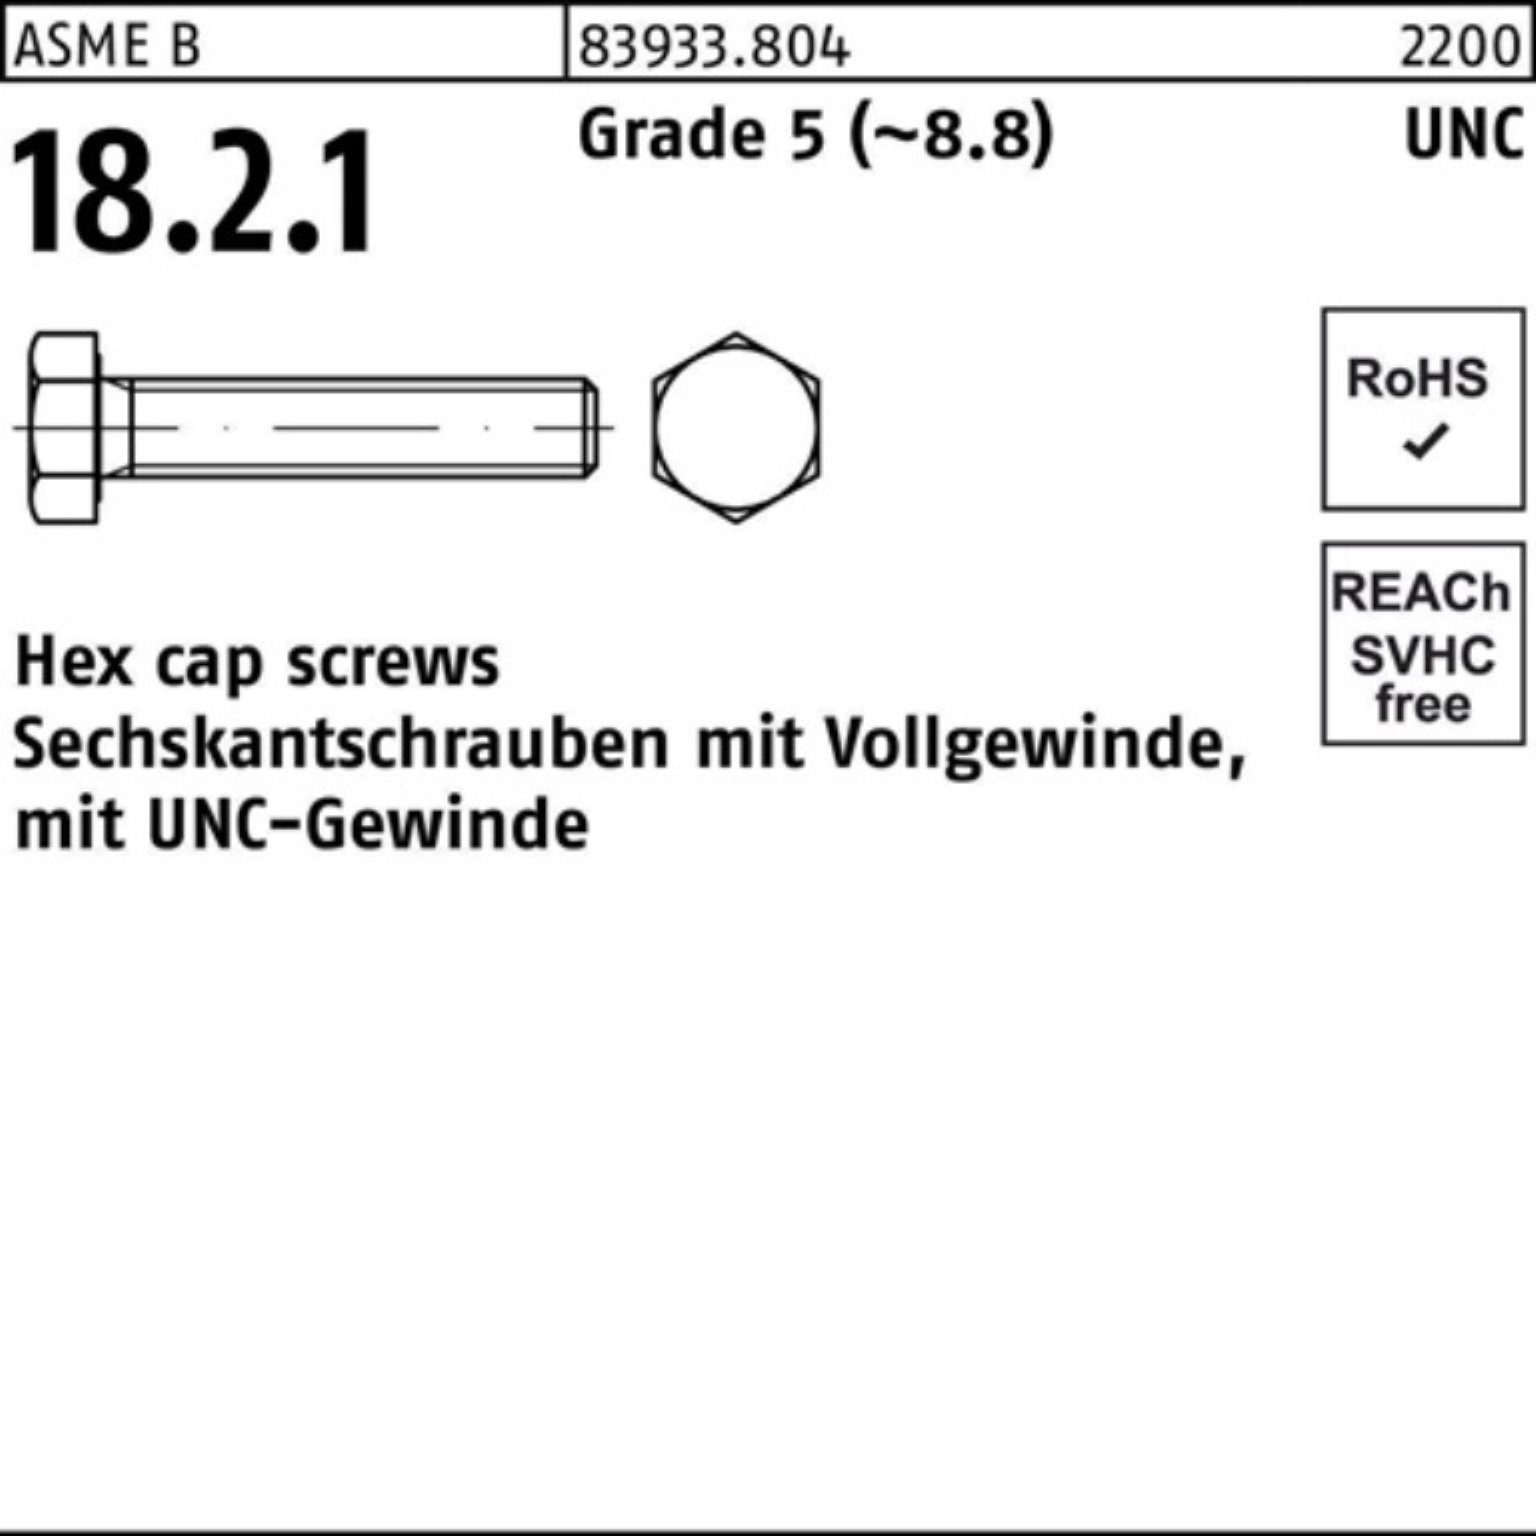 Reyher Sechskantschraube 100er Pack Sechskantschraube R 83933 UNC-Gewinde VG 3/8x 1/2 Grade 5